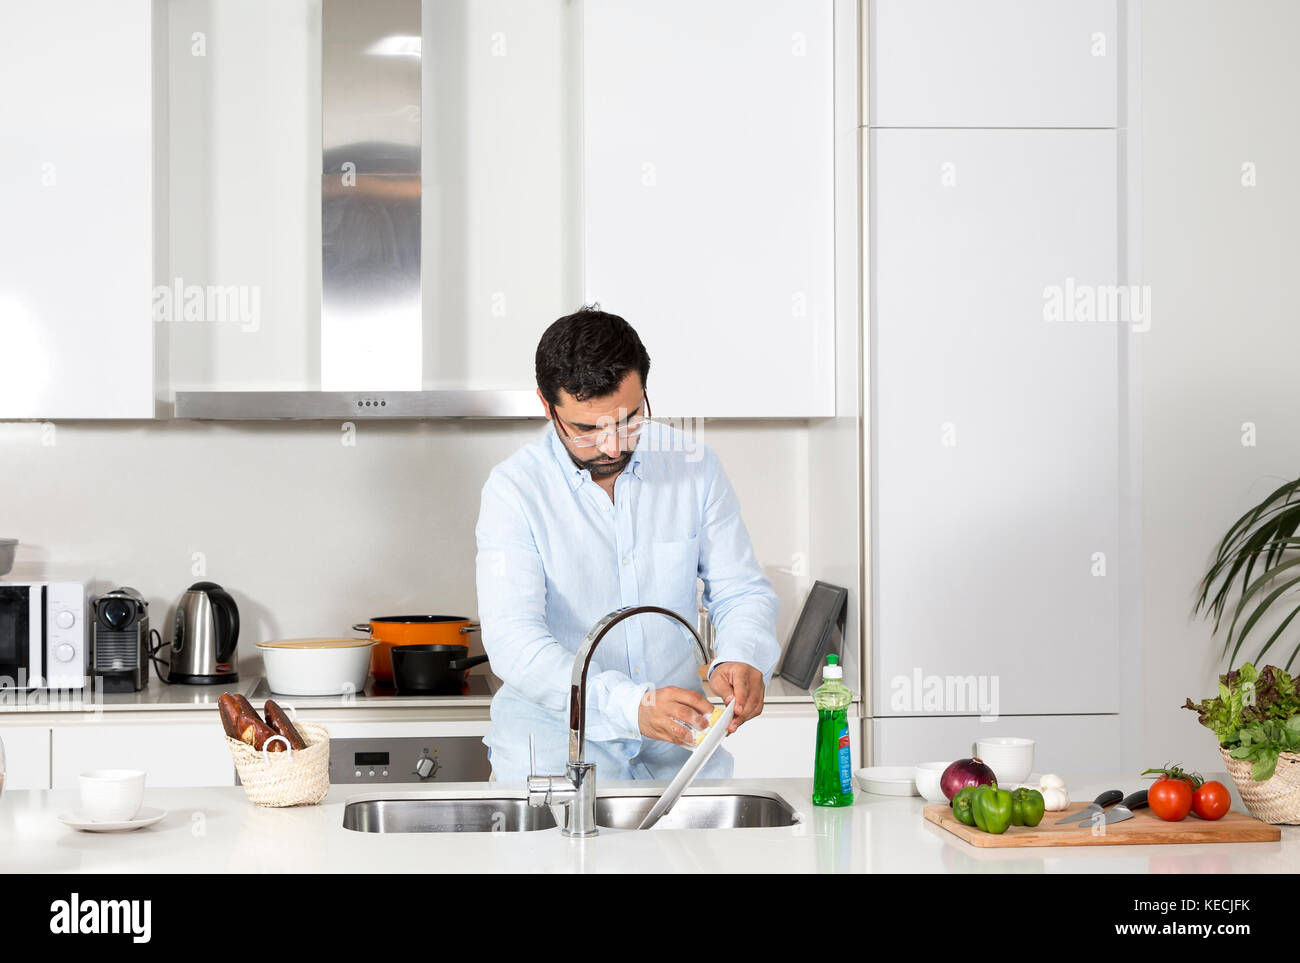 Man washing dishes Stock Photo - Alamy